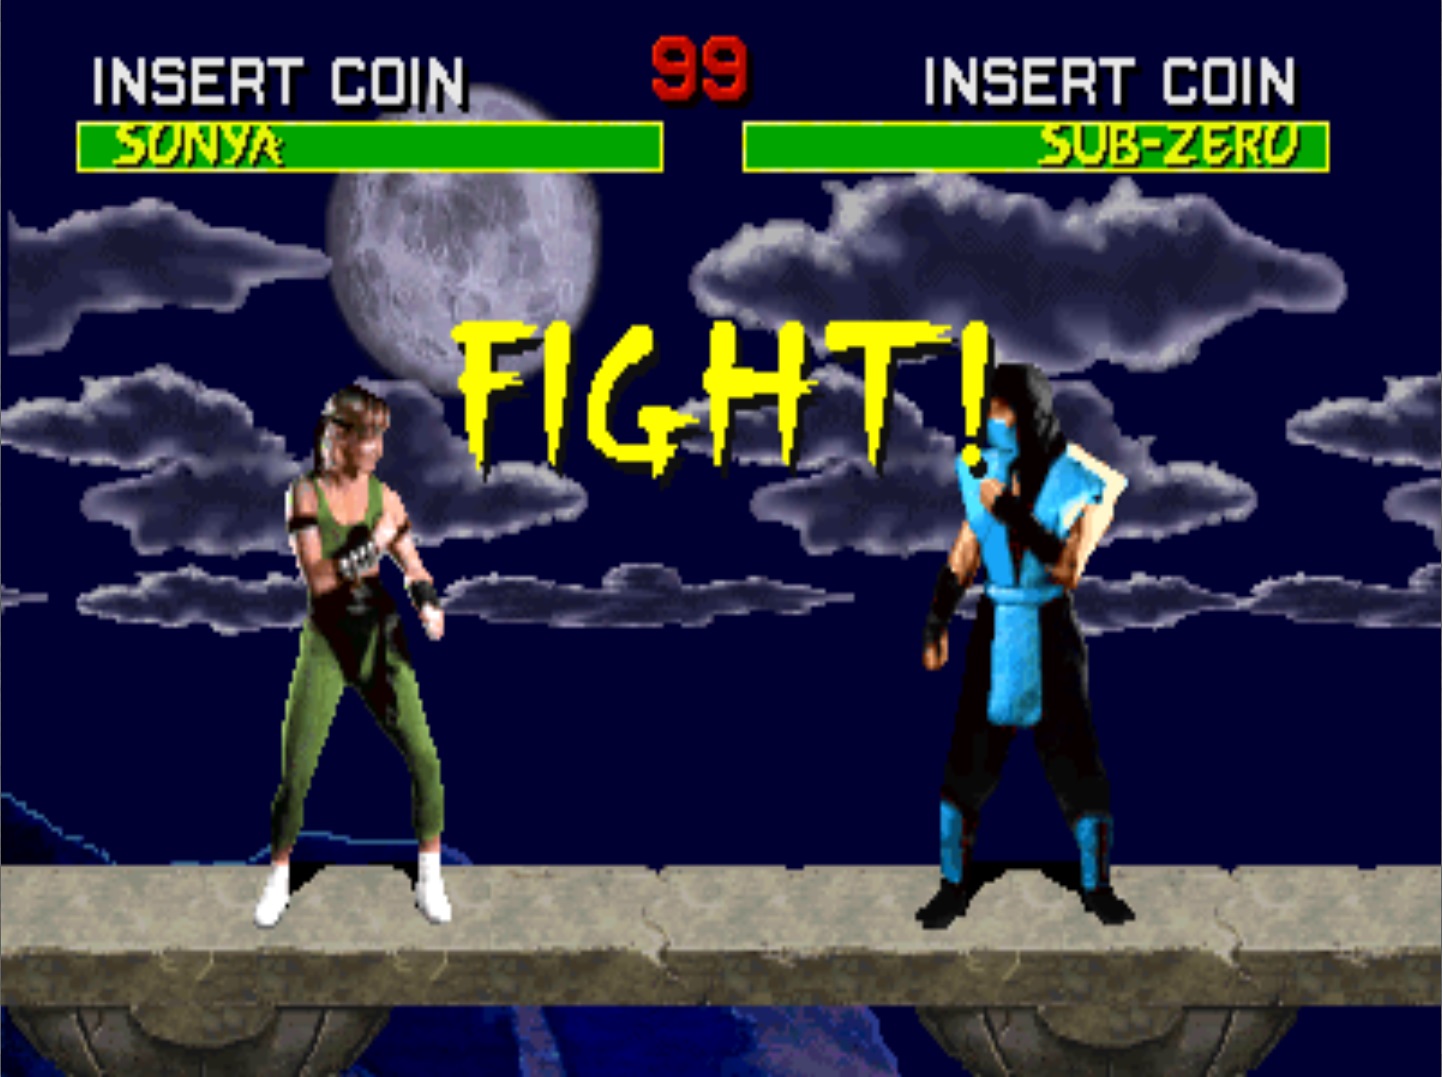 Mortal Kombat (rev 5.0 T-Unit 03/19/93) ROM < MAME ROMs